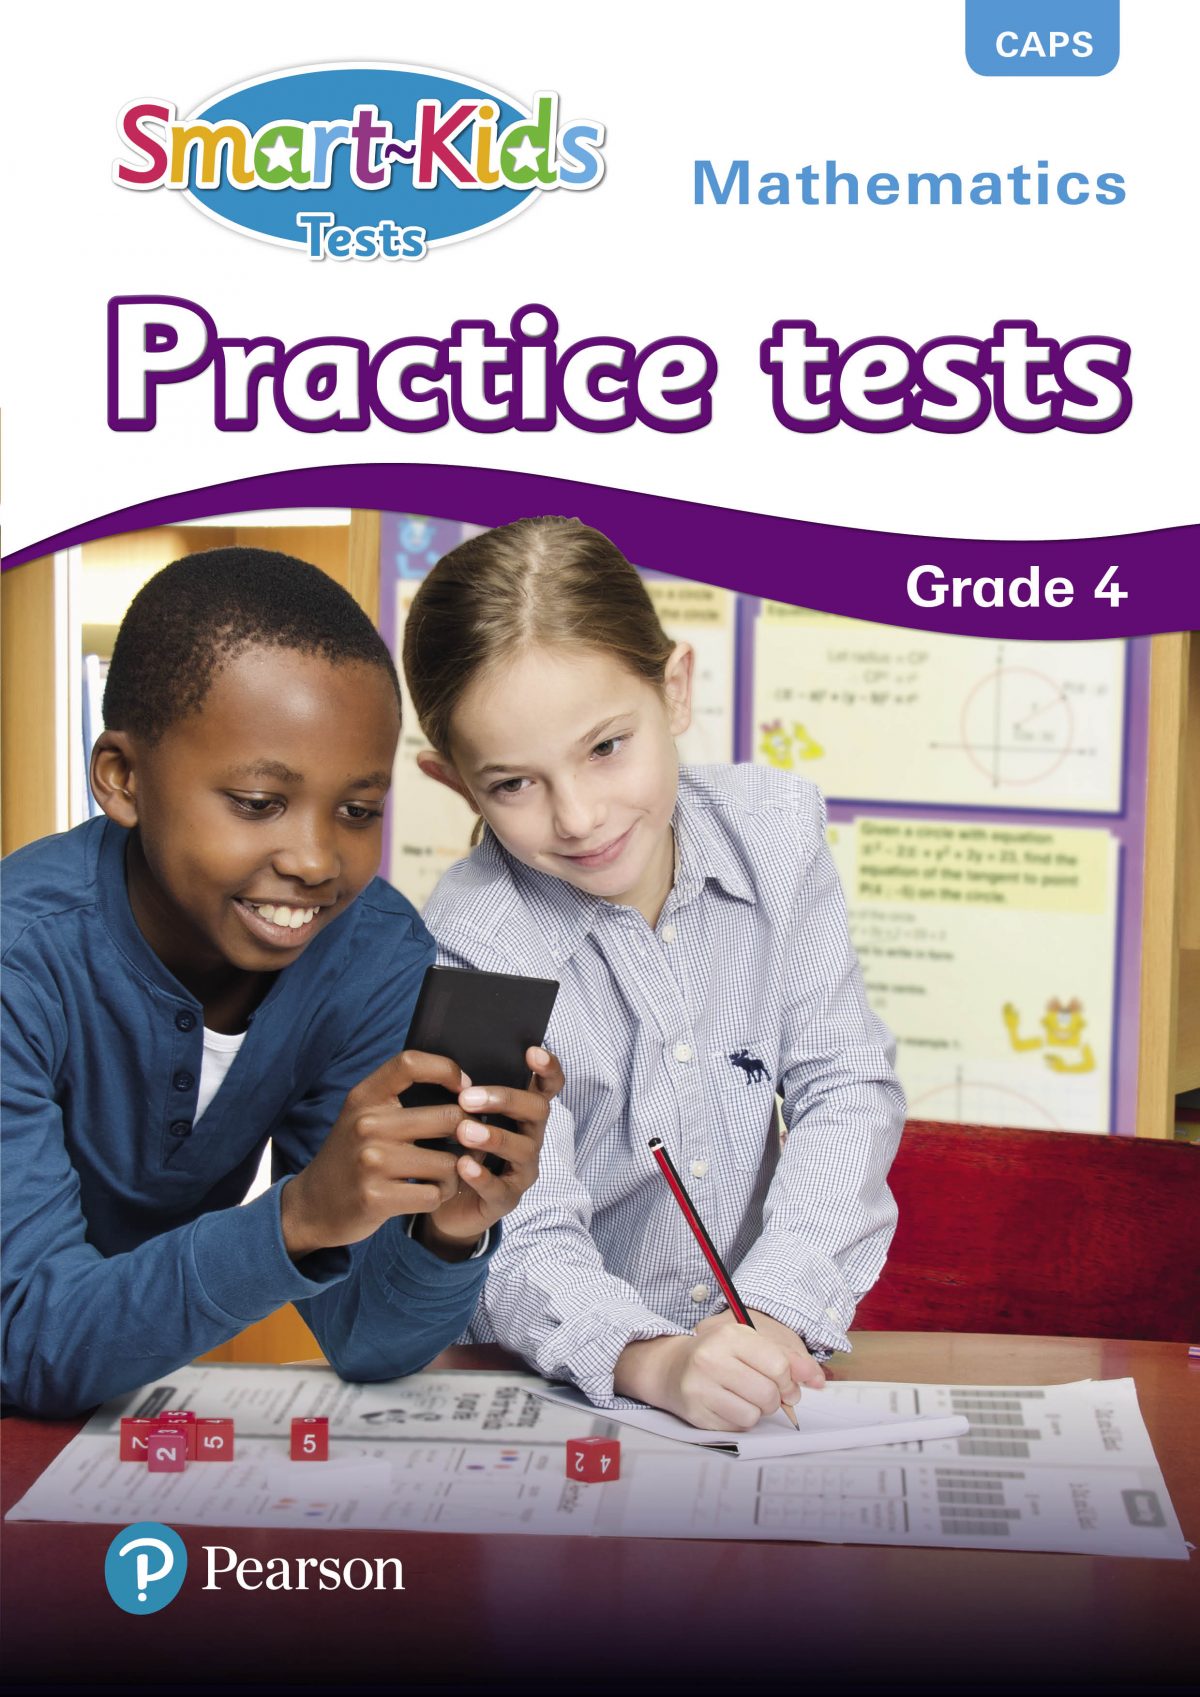 Smart-Kids Practise Tests Maths Grade 4